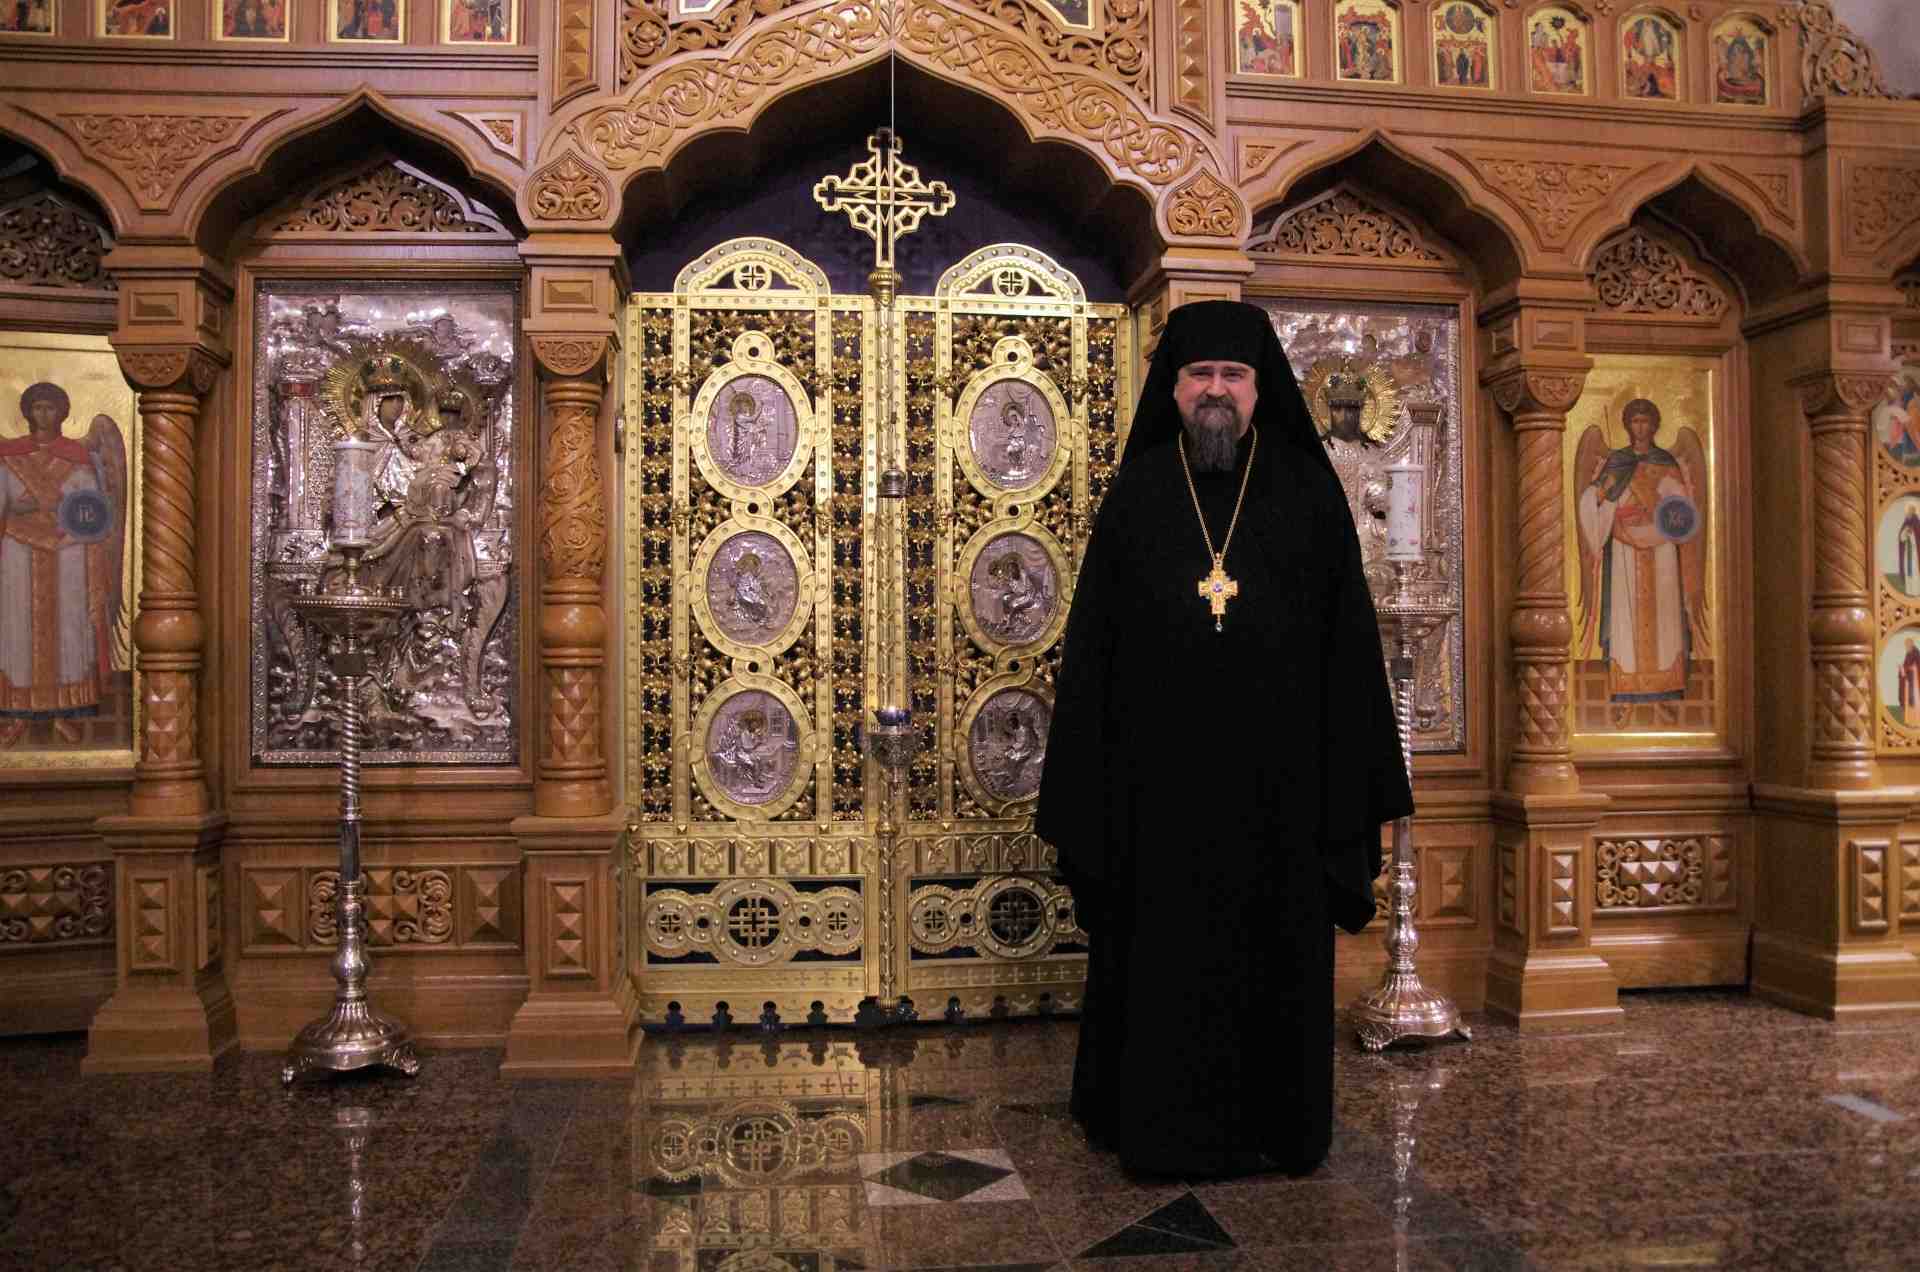 Valamon luostarin igumeni Sergei luostarin pääkirkossa ikonostaasin edessä